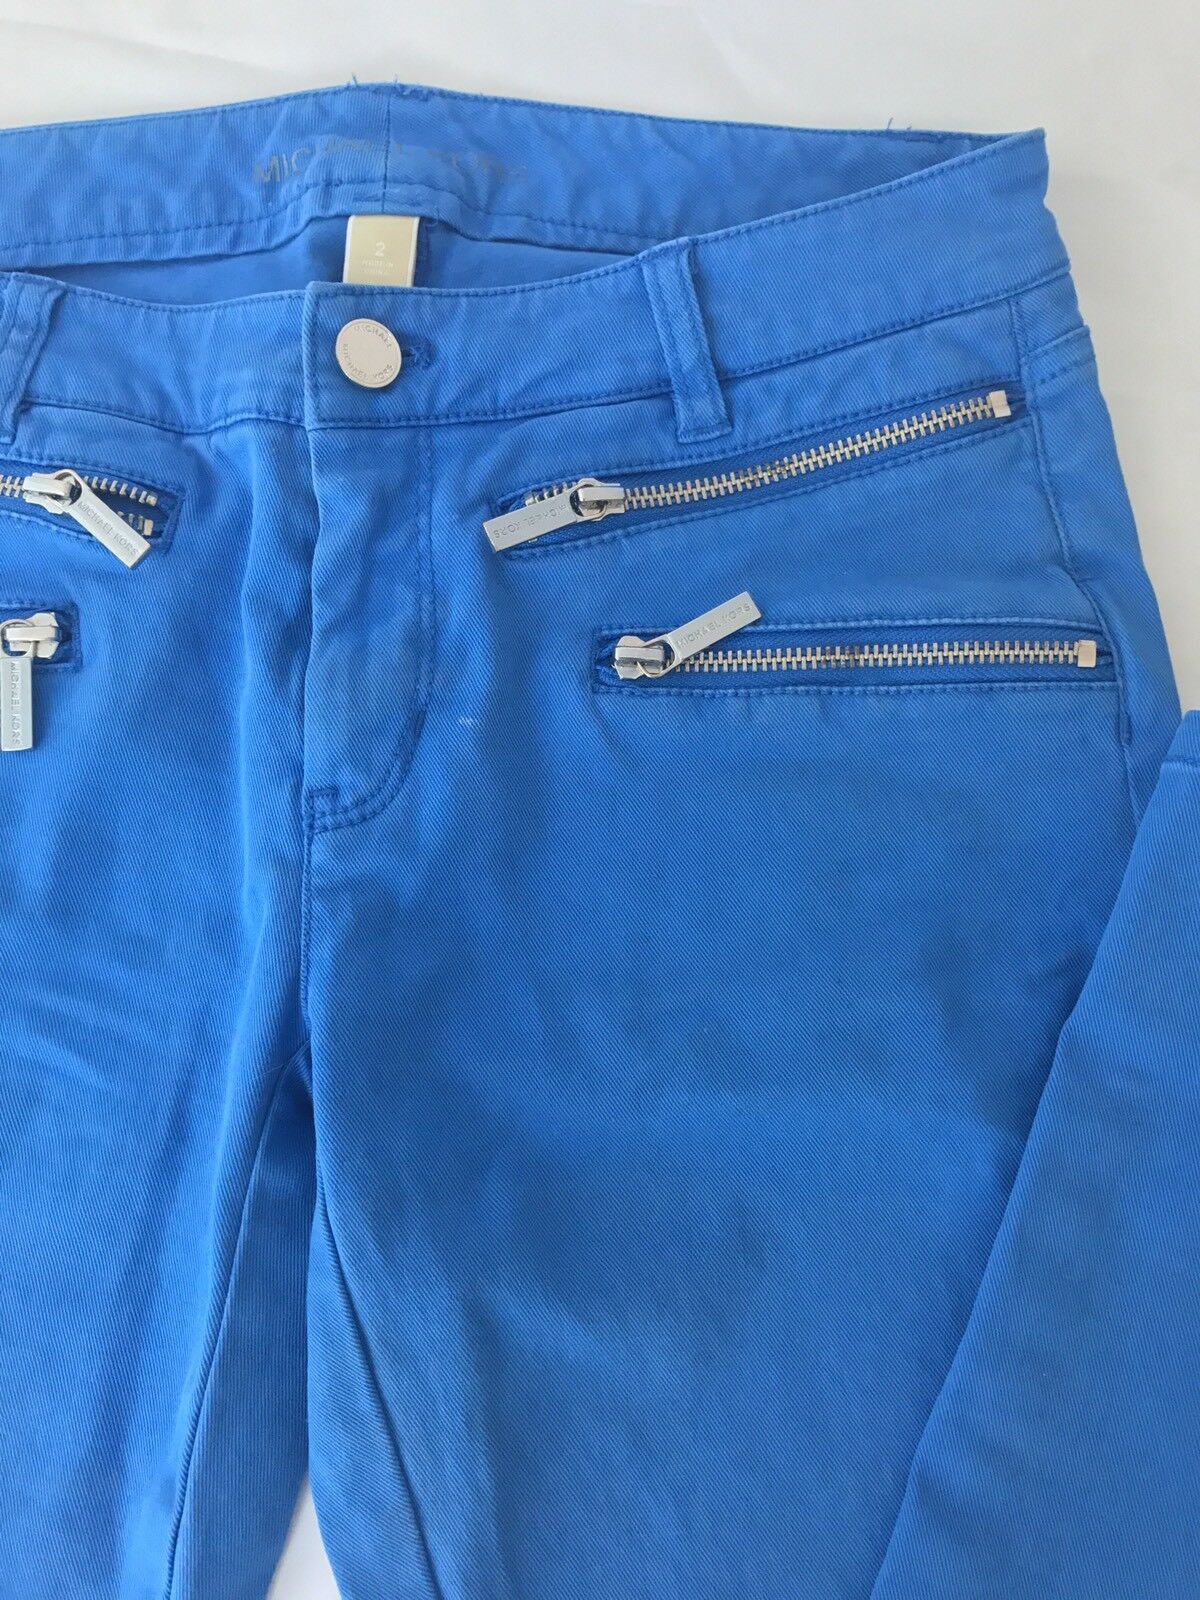 Женские джинсы скинни Michael Kors, размер 26, США